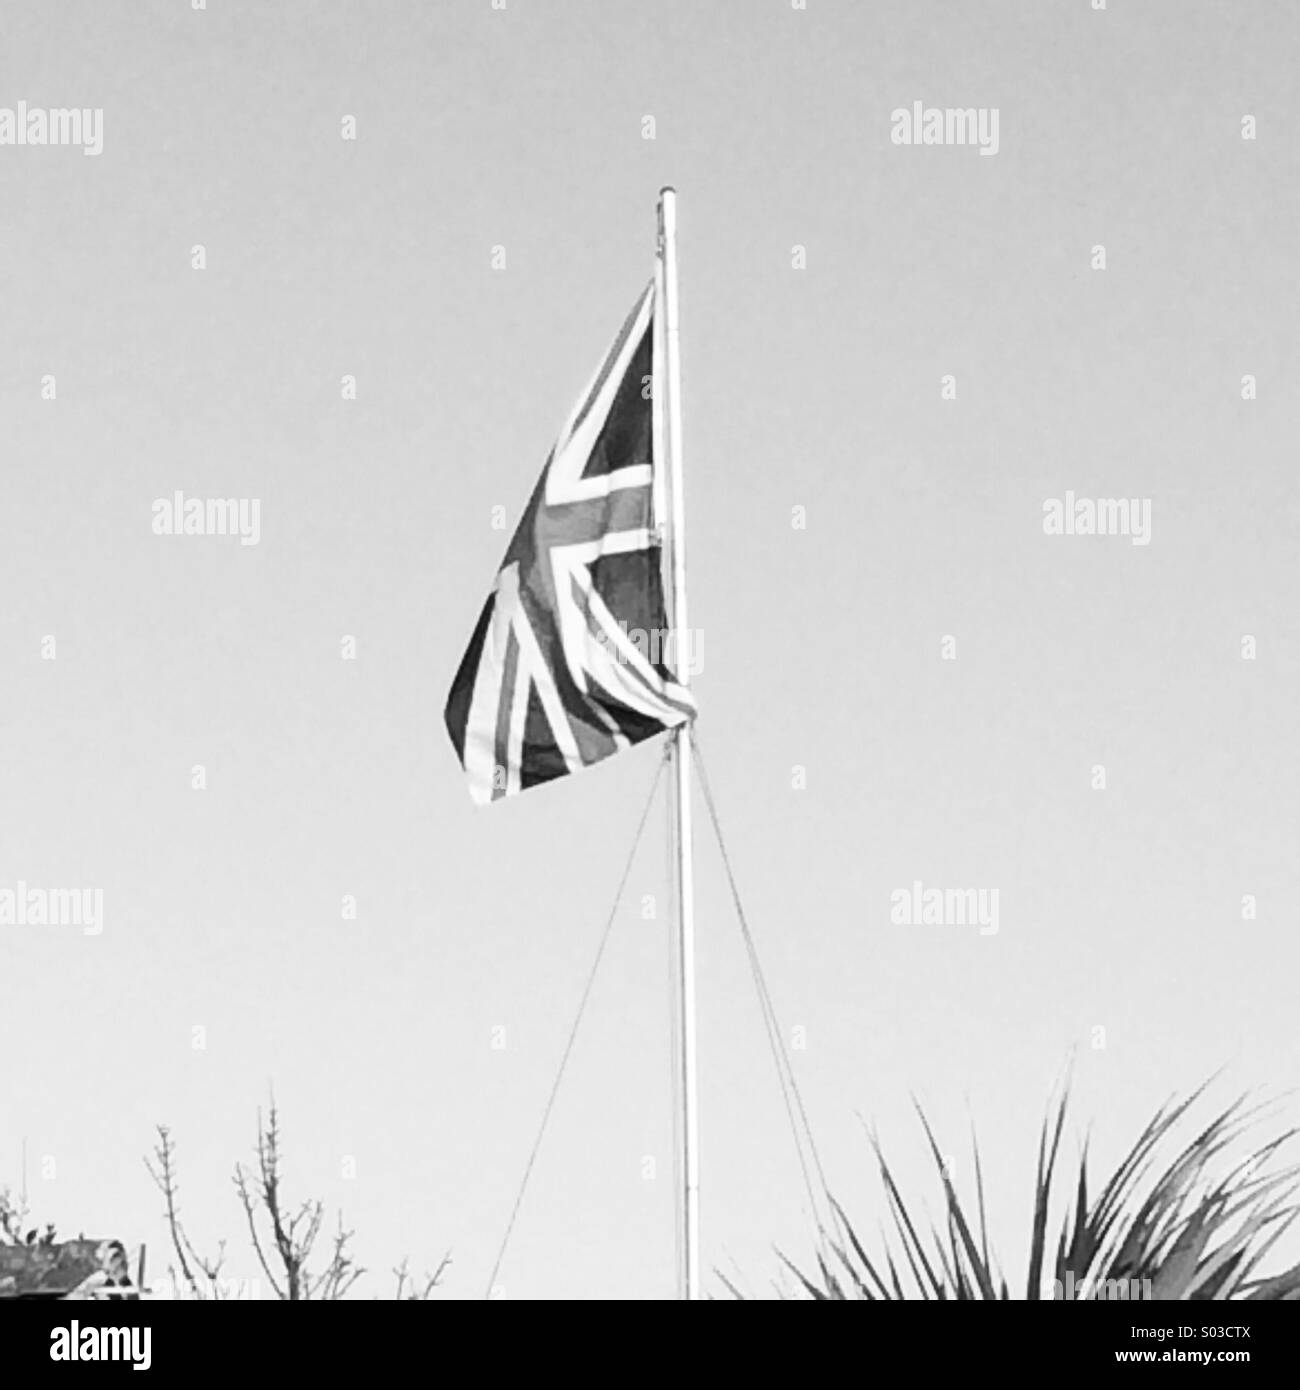 British flag Stock Photo